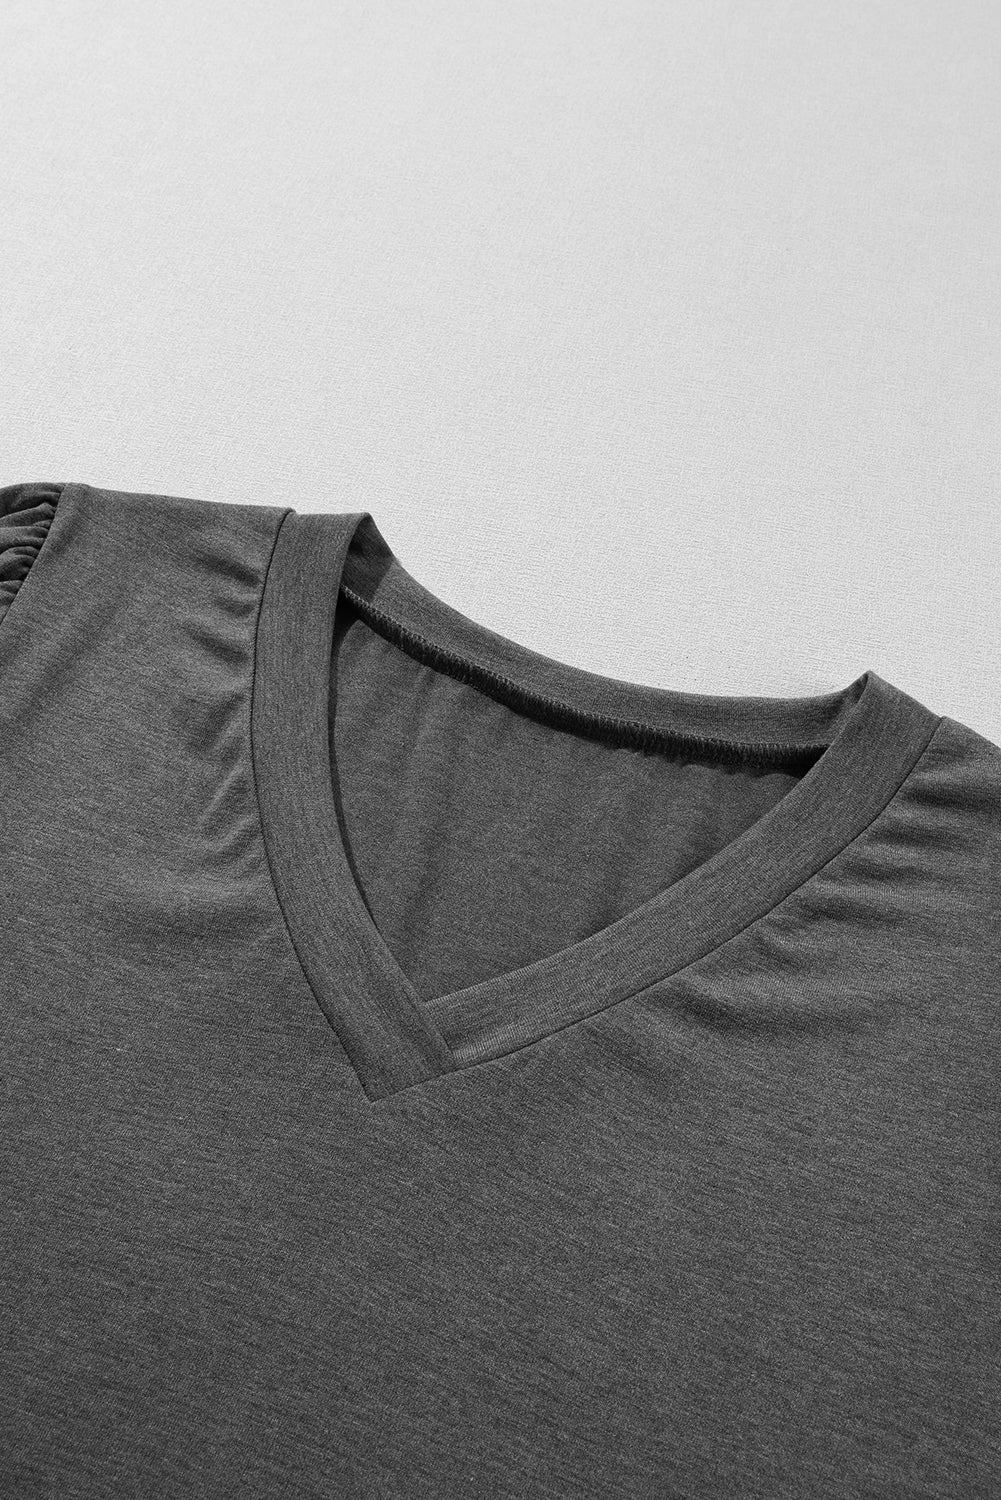 T-shirt con scollo a V con maniche a petalo alla moda grigio carbonio